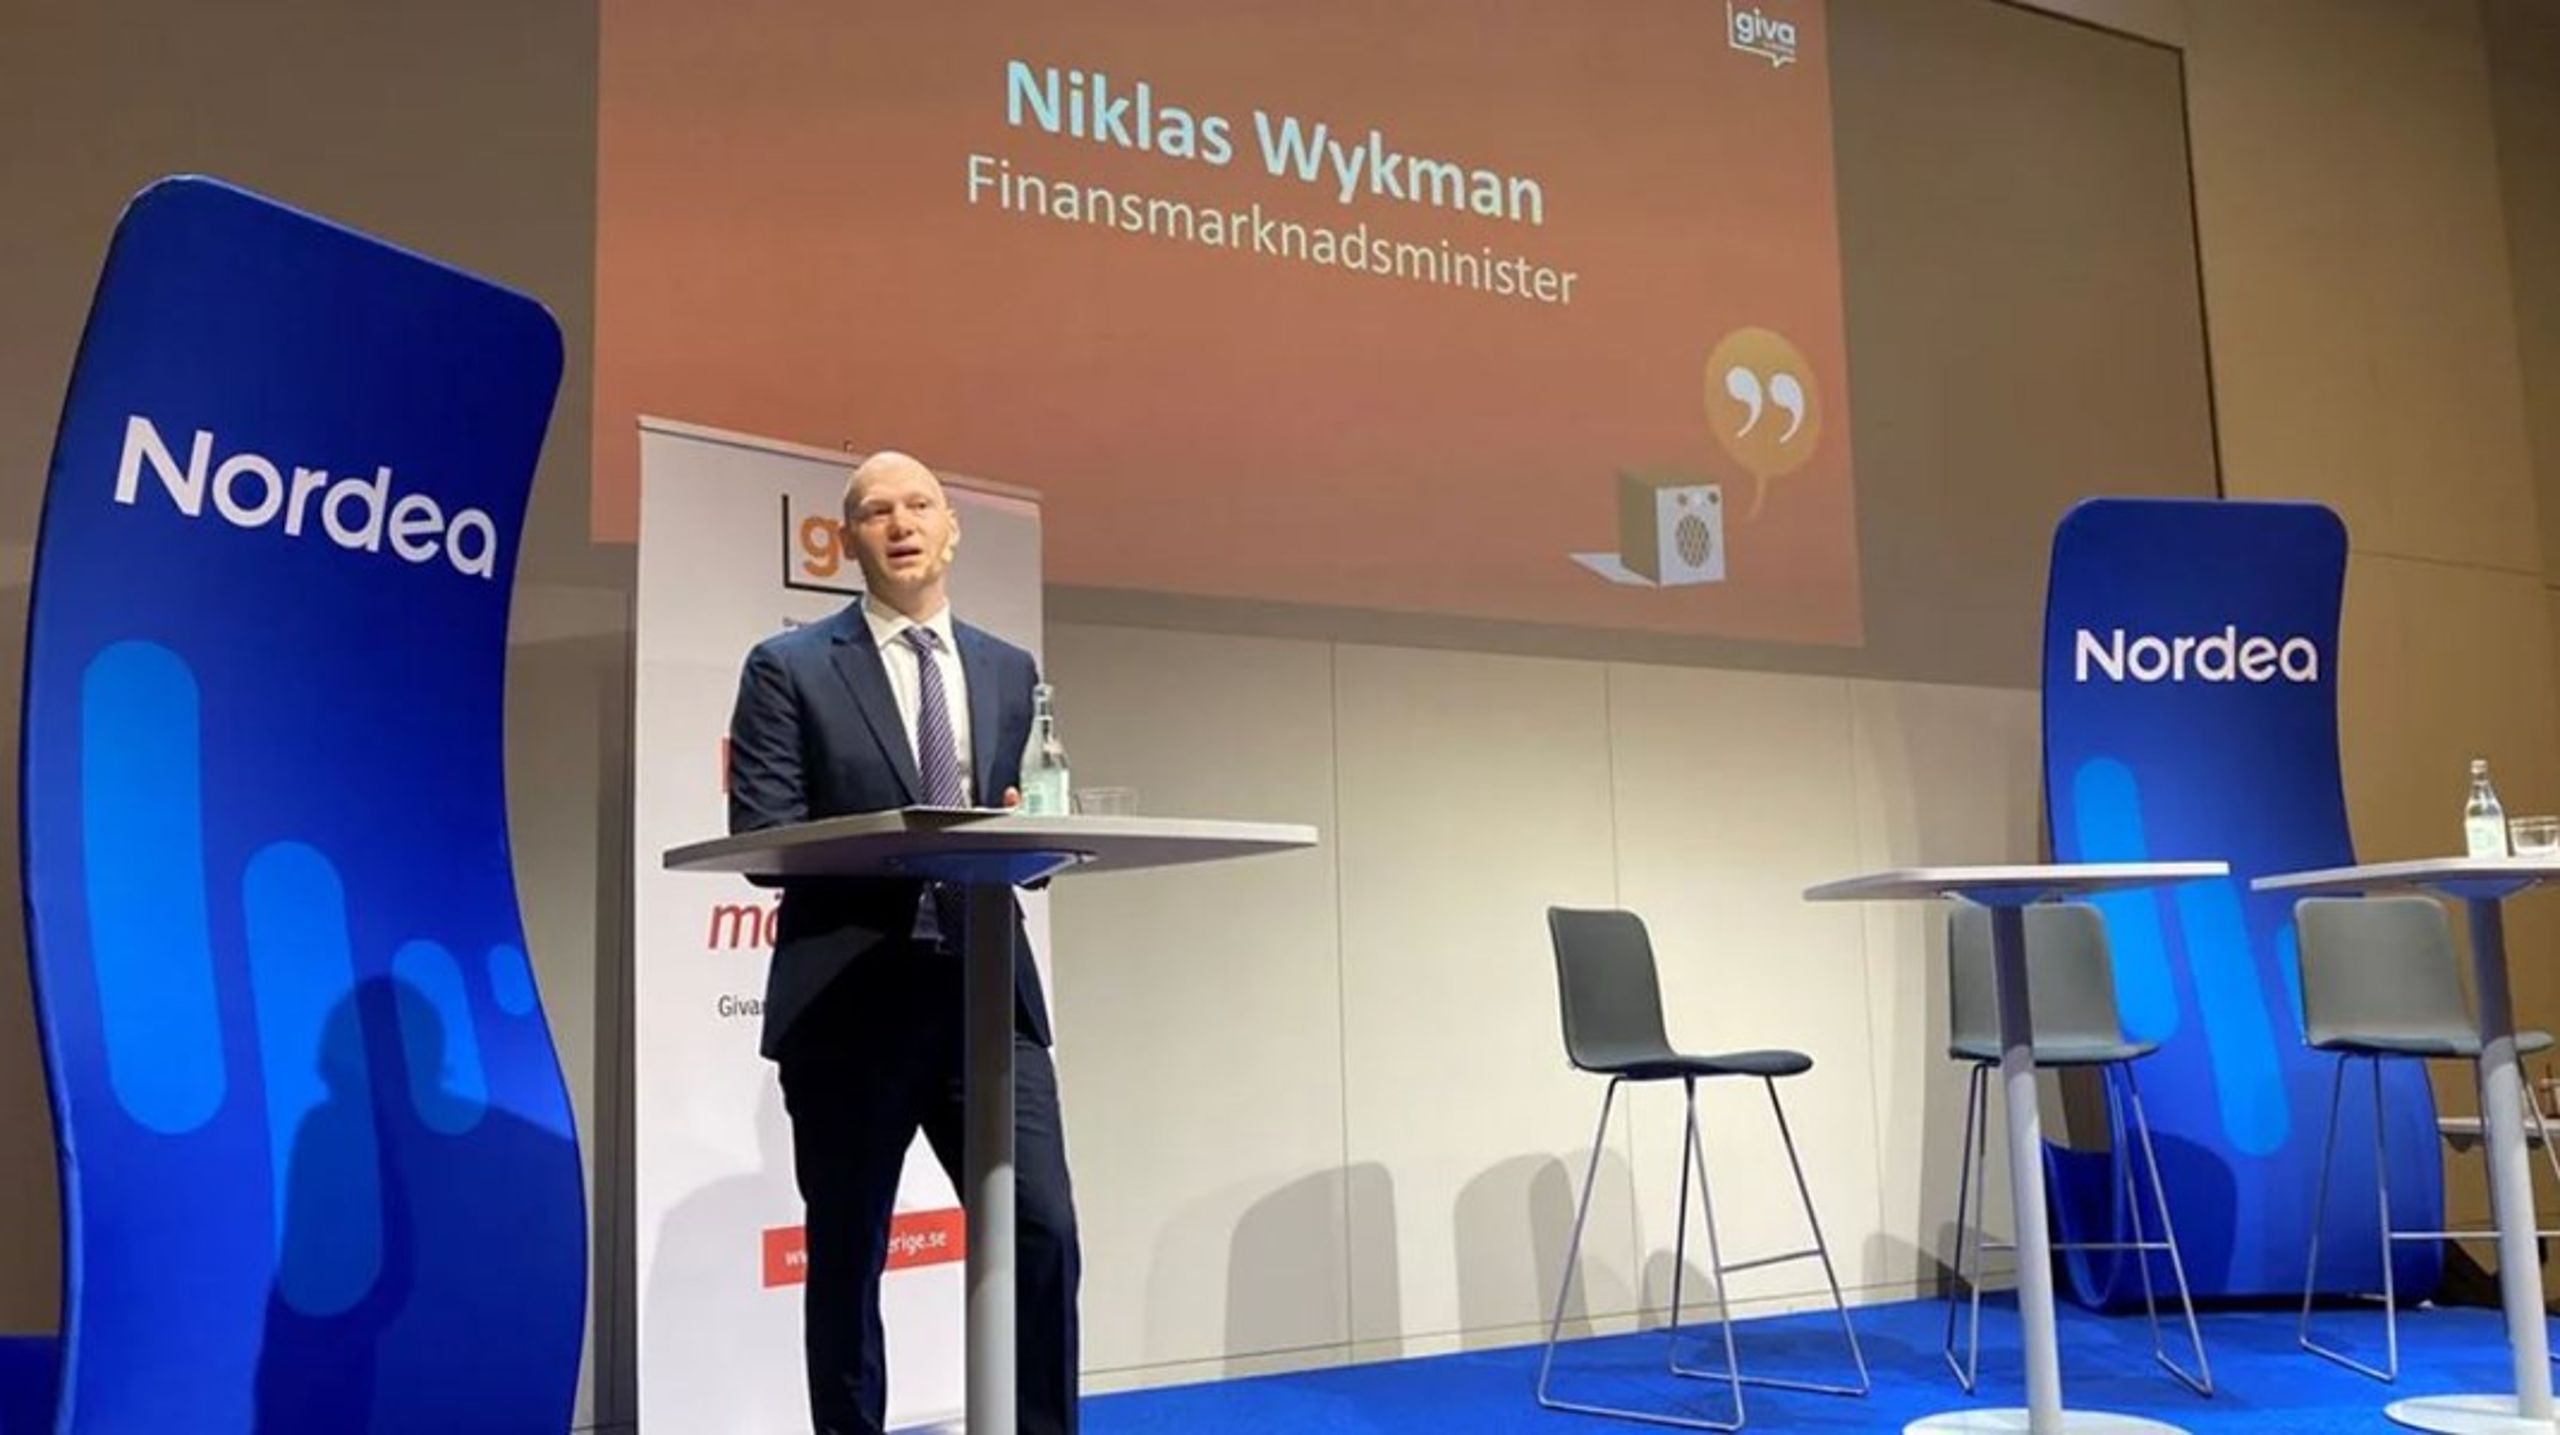 <div>Sveriges finansmarkedsminister, Niklas Wykman (M), var blandt ​​talerne, da brancheorganisationen Giva Sverige arrangerede konferencen&nbsp;Civilsamhällets finansforum.<br></div>